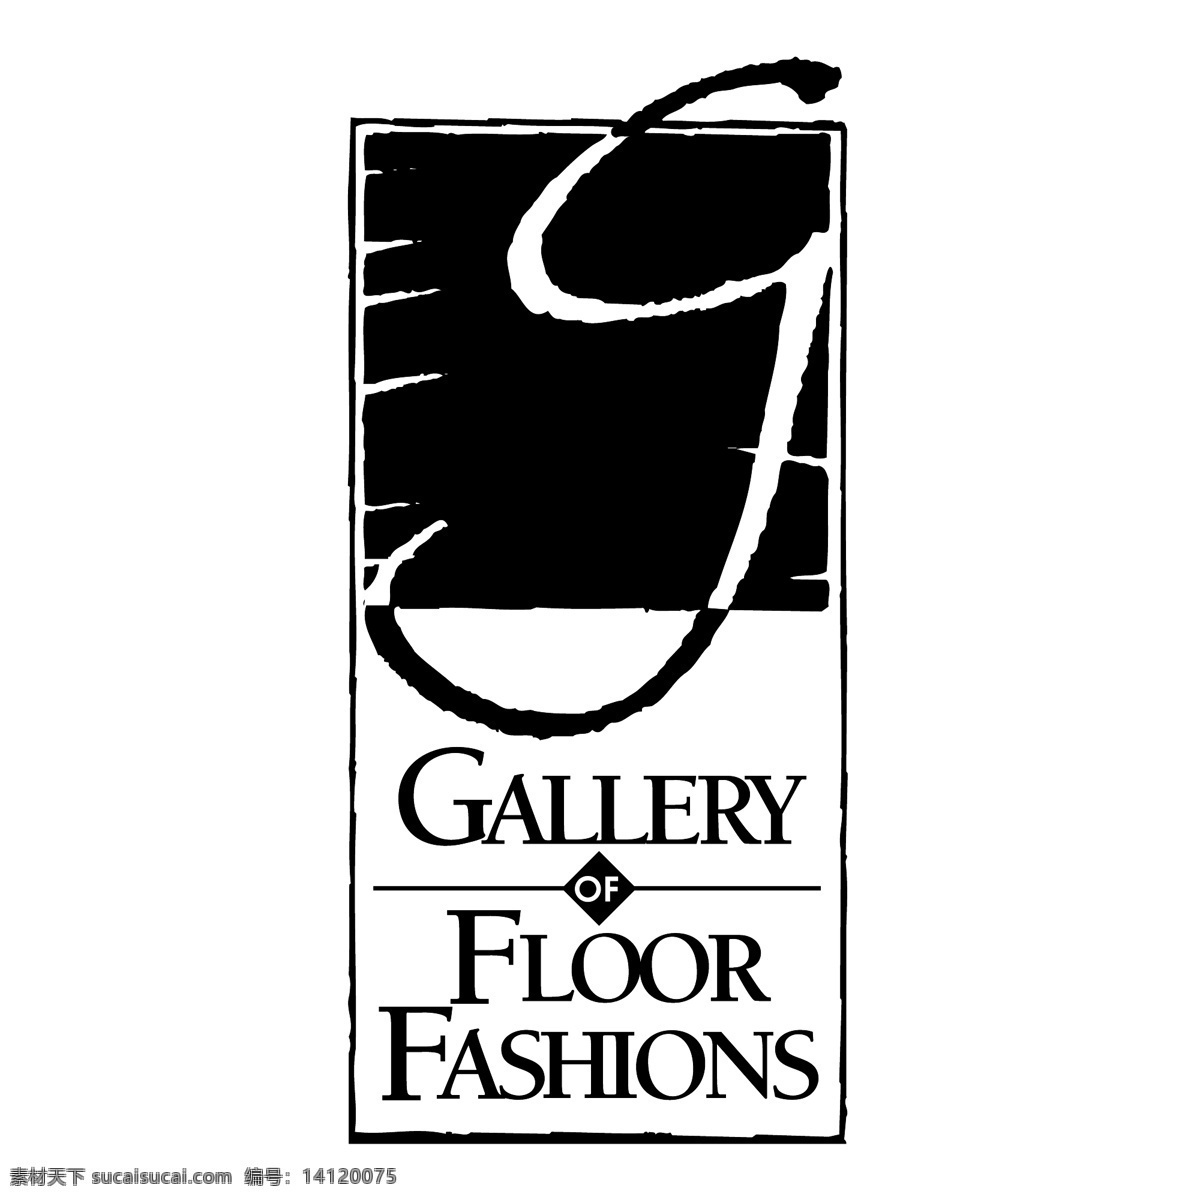 时装 画廊 地板 时尚 画廊的地板 地板的时尚 矢量艺术画廊 美术馆 免费 矢量 画廊的矢量图 自由 载体 艺术 矢量图形库